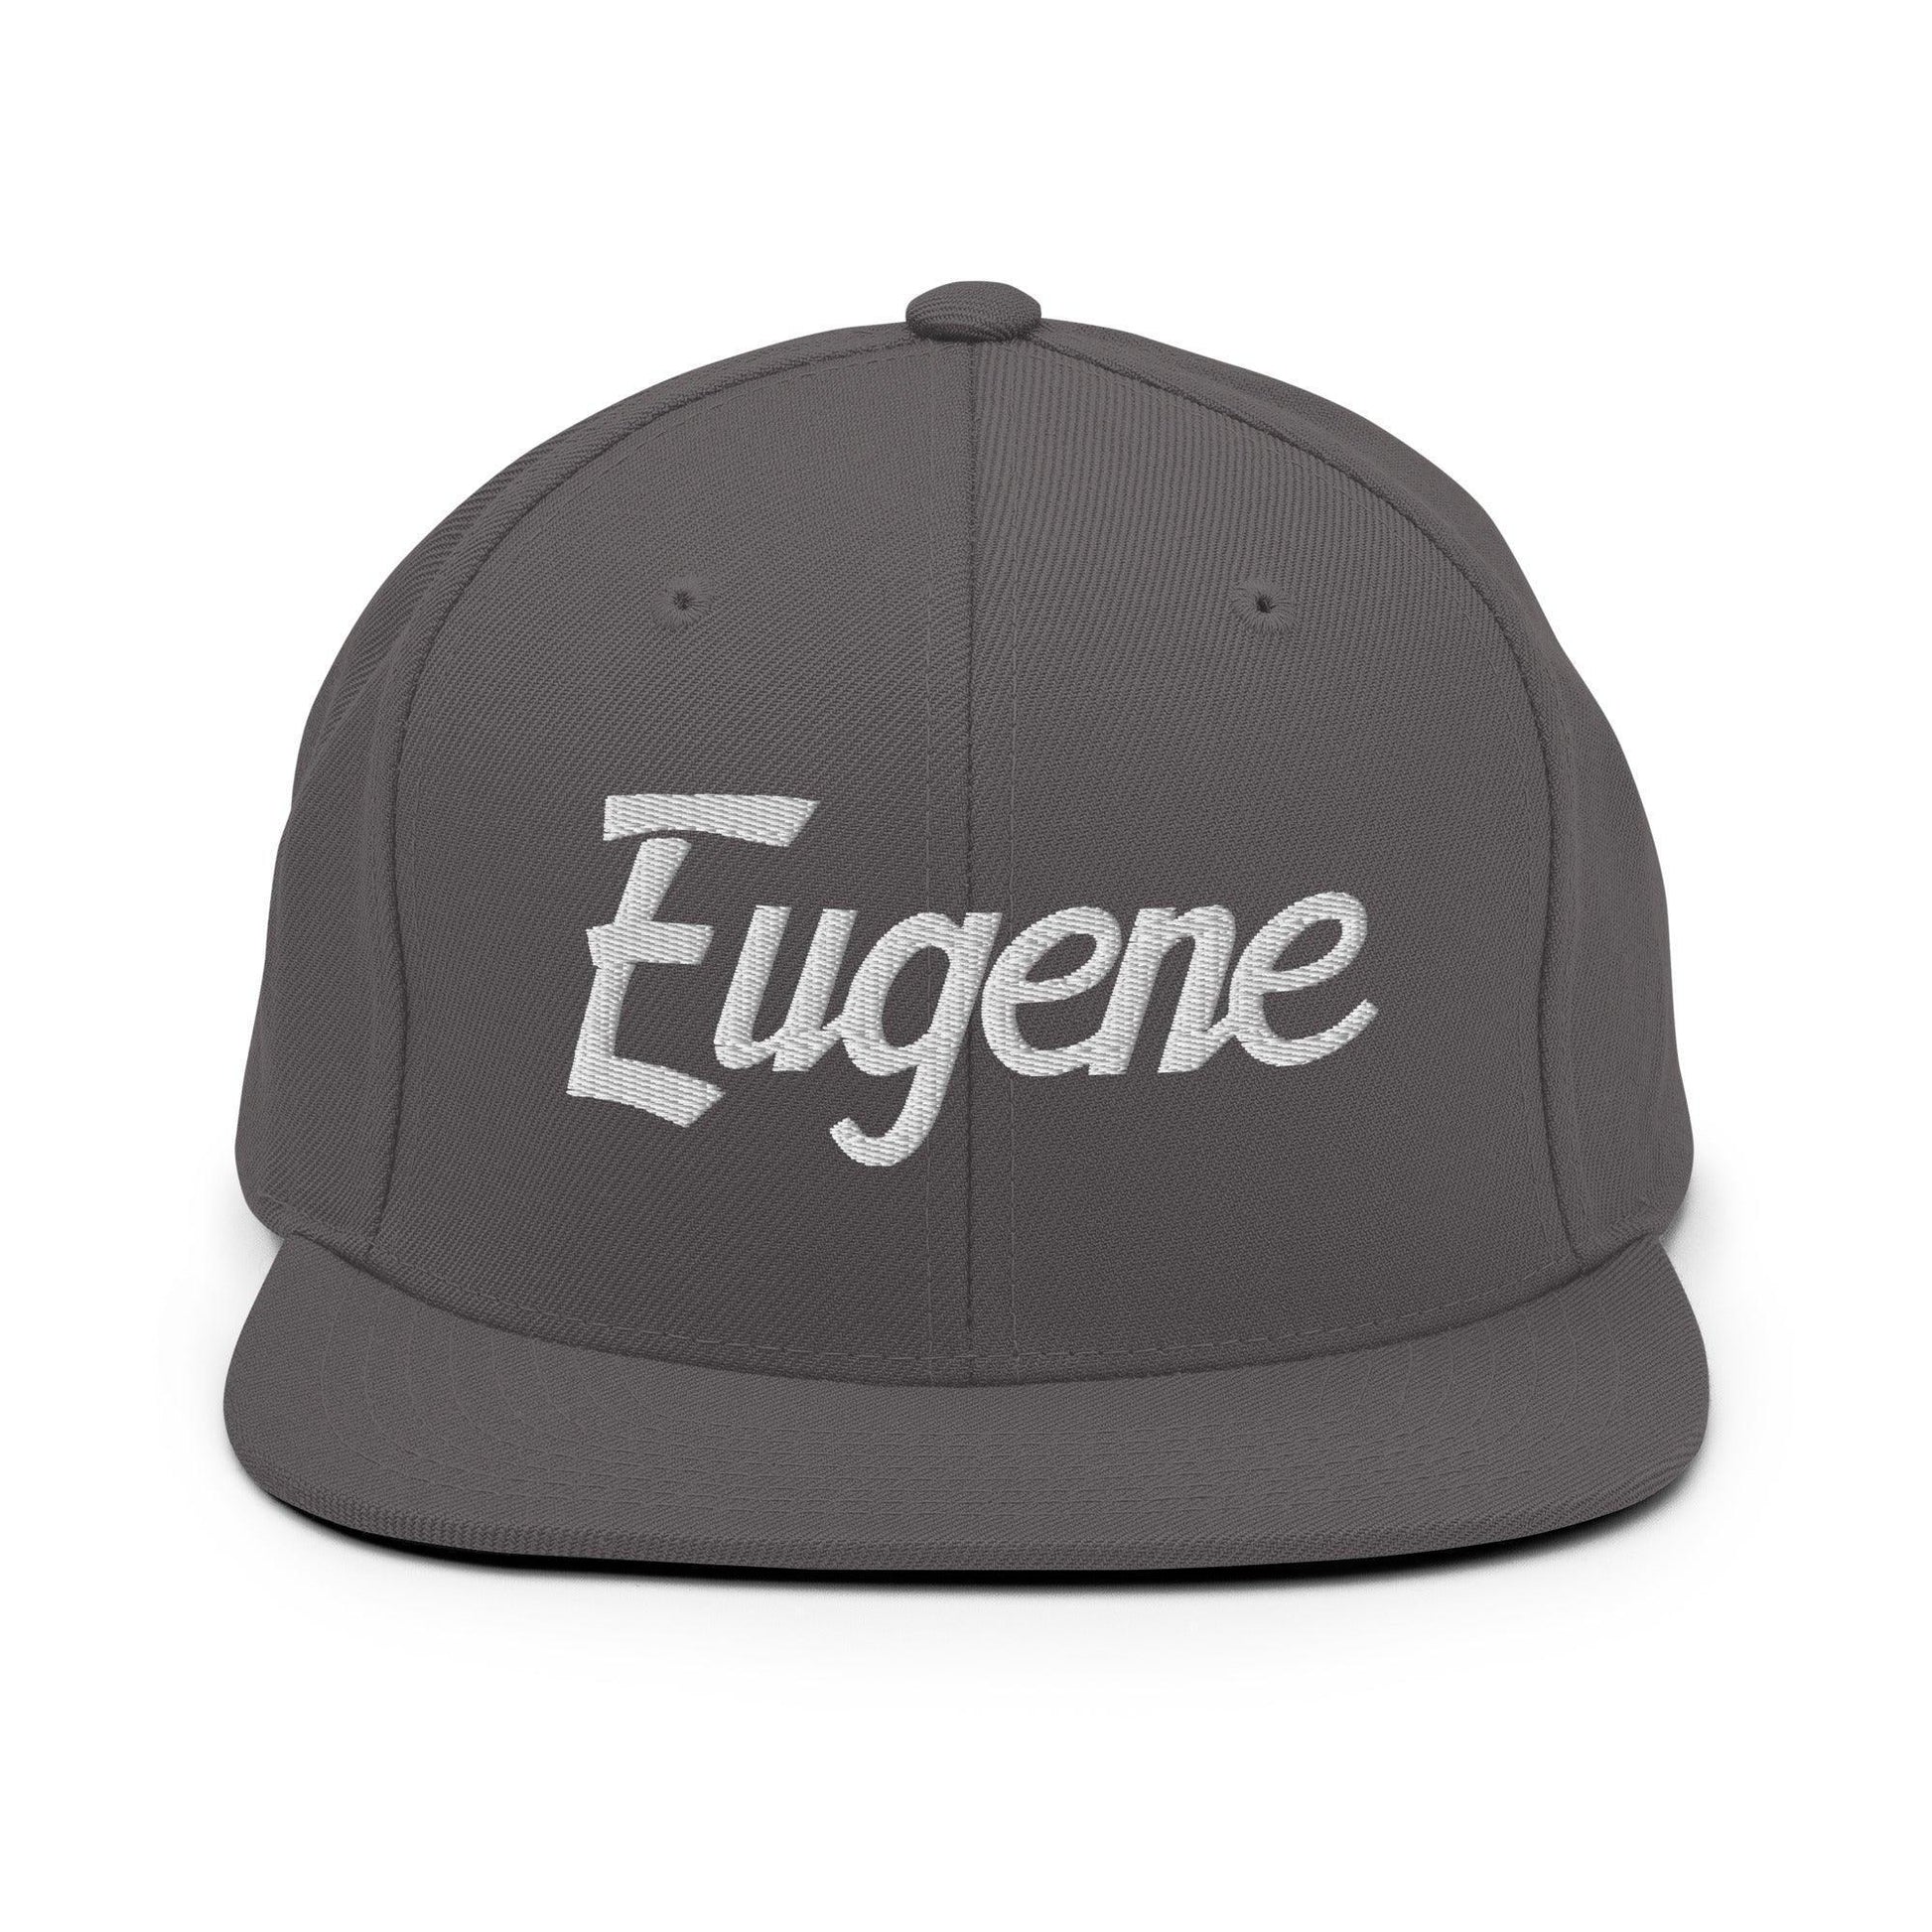 Eugene Script Snapback Hat Dark Grey